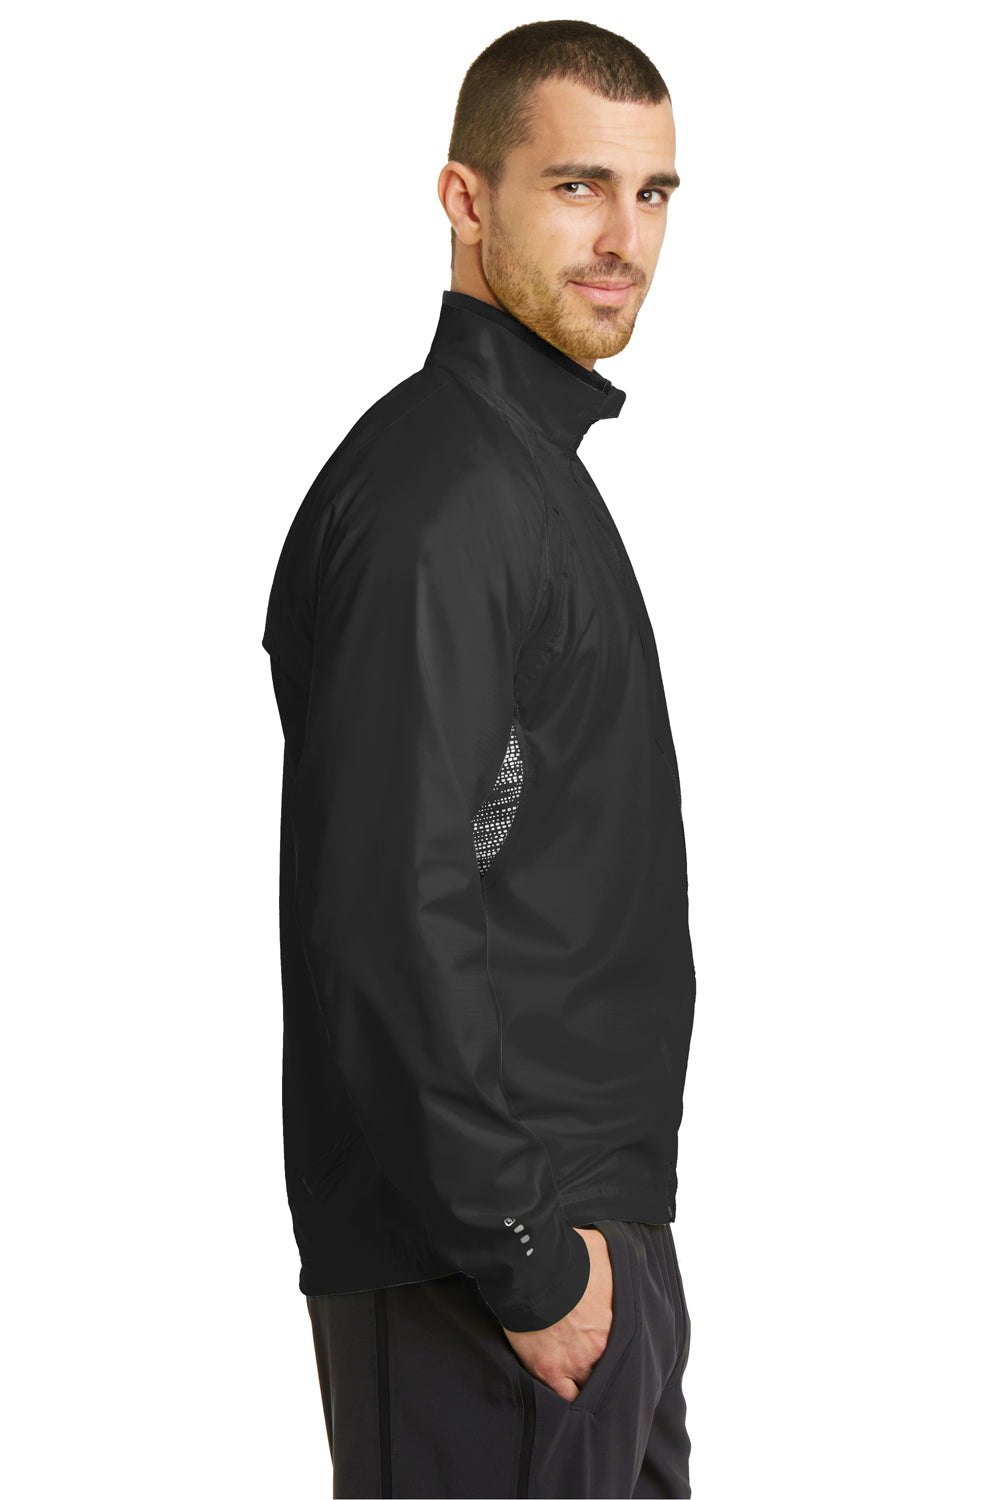 Ogio OE710 Mens Endurance Trainer Wind & Water Resistant Full Zip Jacket Black Side